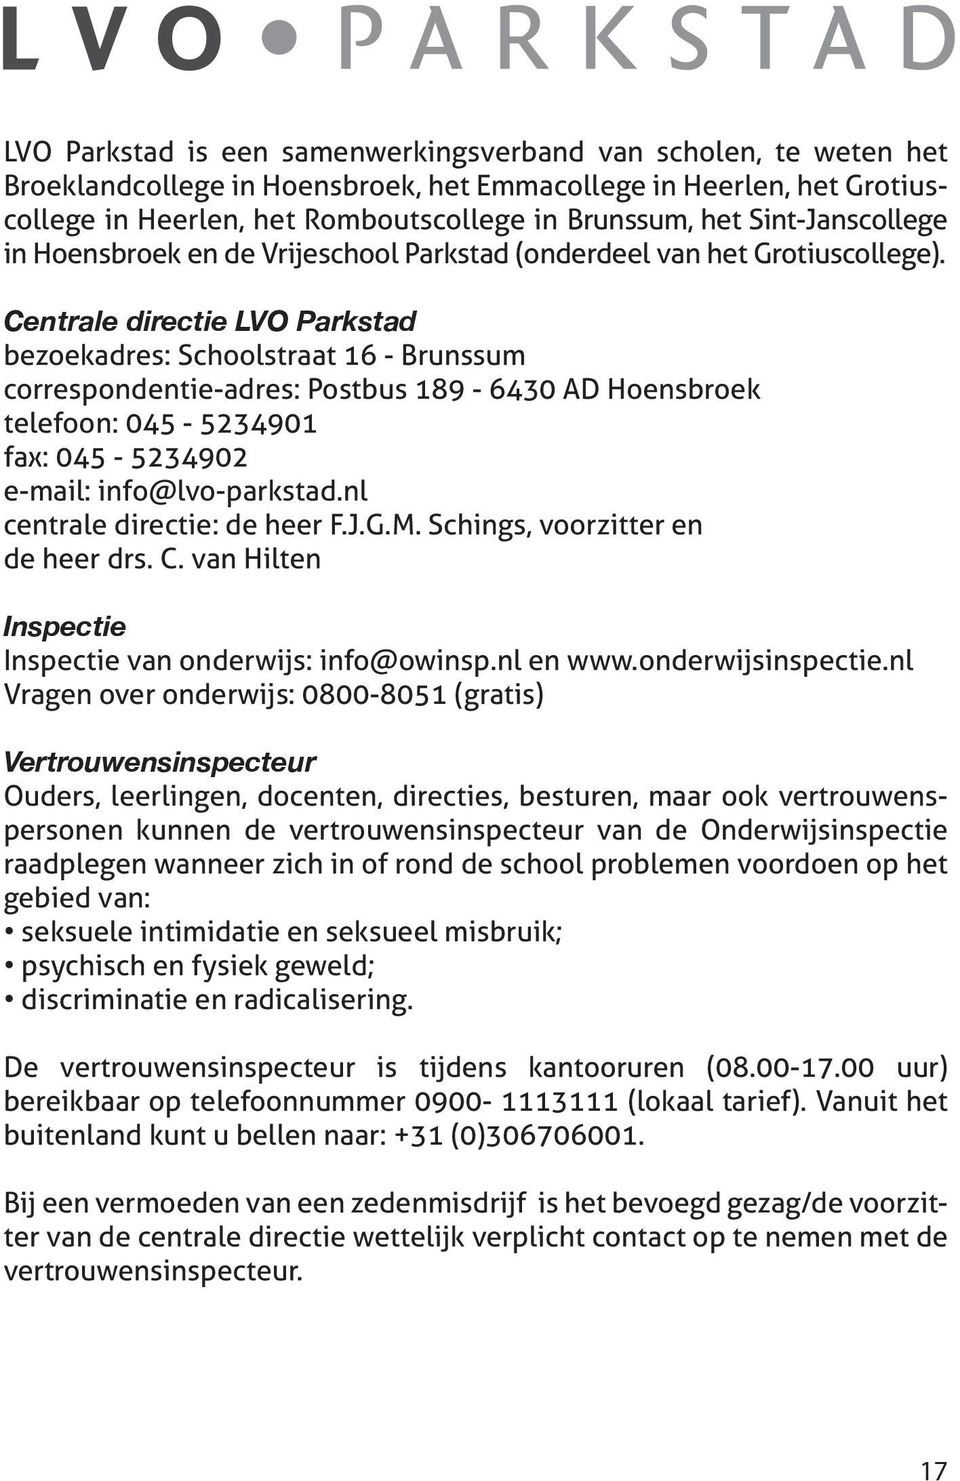 Centrale directie LVO Parkstad bezoekadres: Schoolstraat 16 - Brunssum correspondentie-adres: Postbus 189-6430 AD Hoensbroek telefoon: 045-5234901 fax: 045-5234902 e-mail: info@lvo-parkstad.